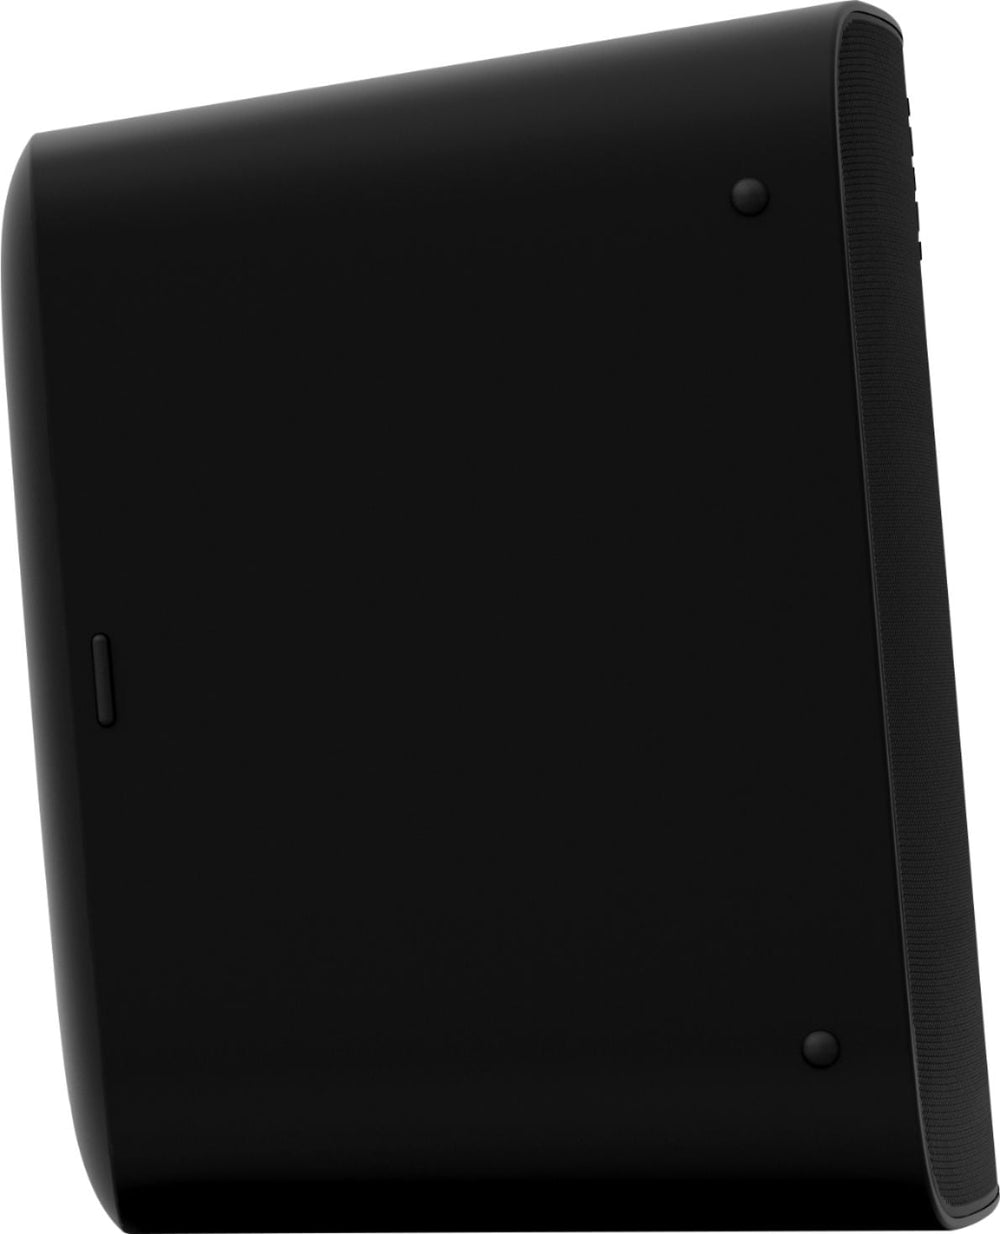 Sonos - Five Wireless Smart Speaker - Black_1